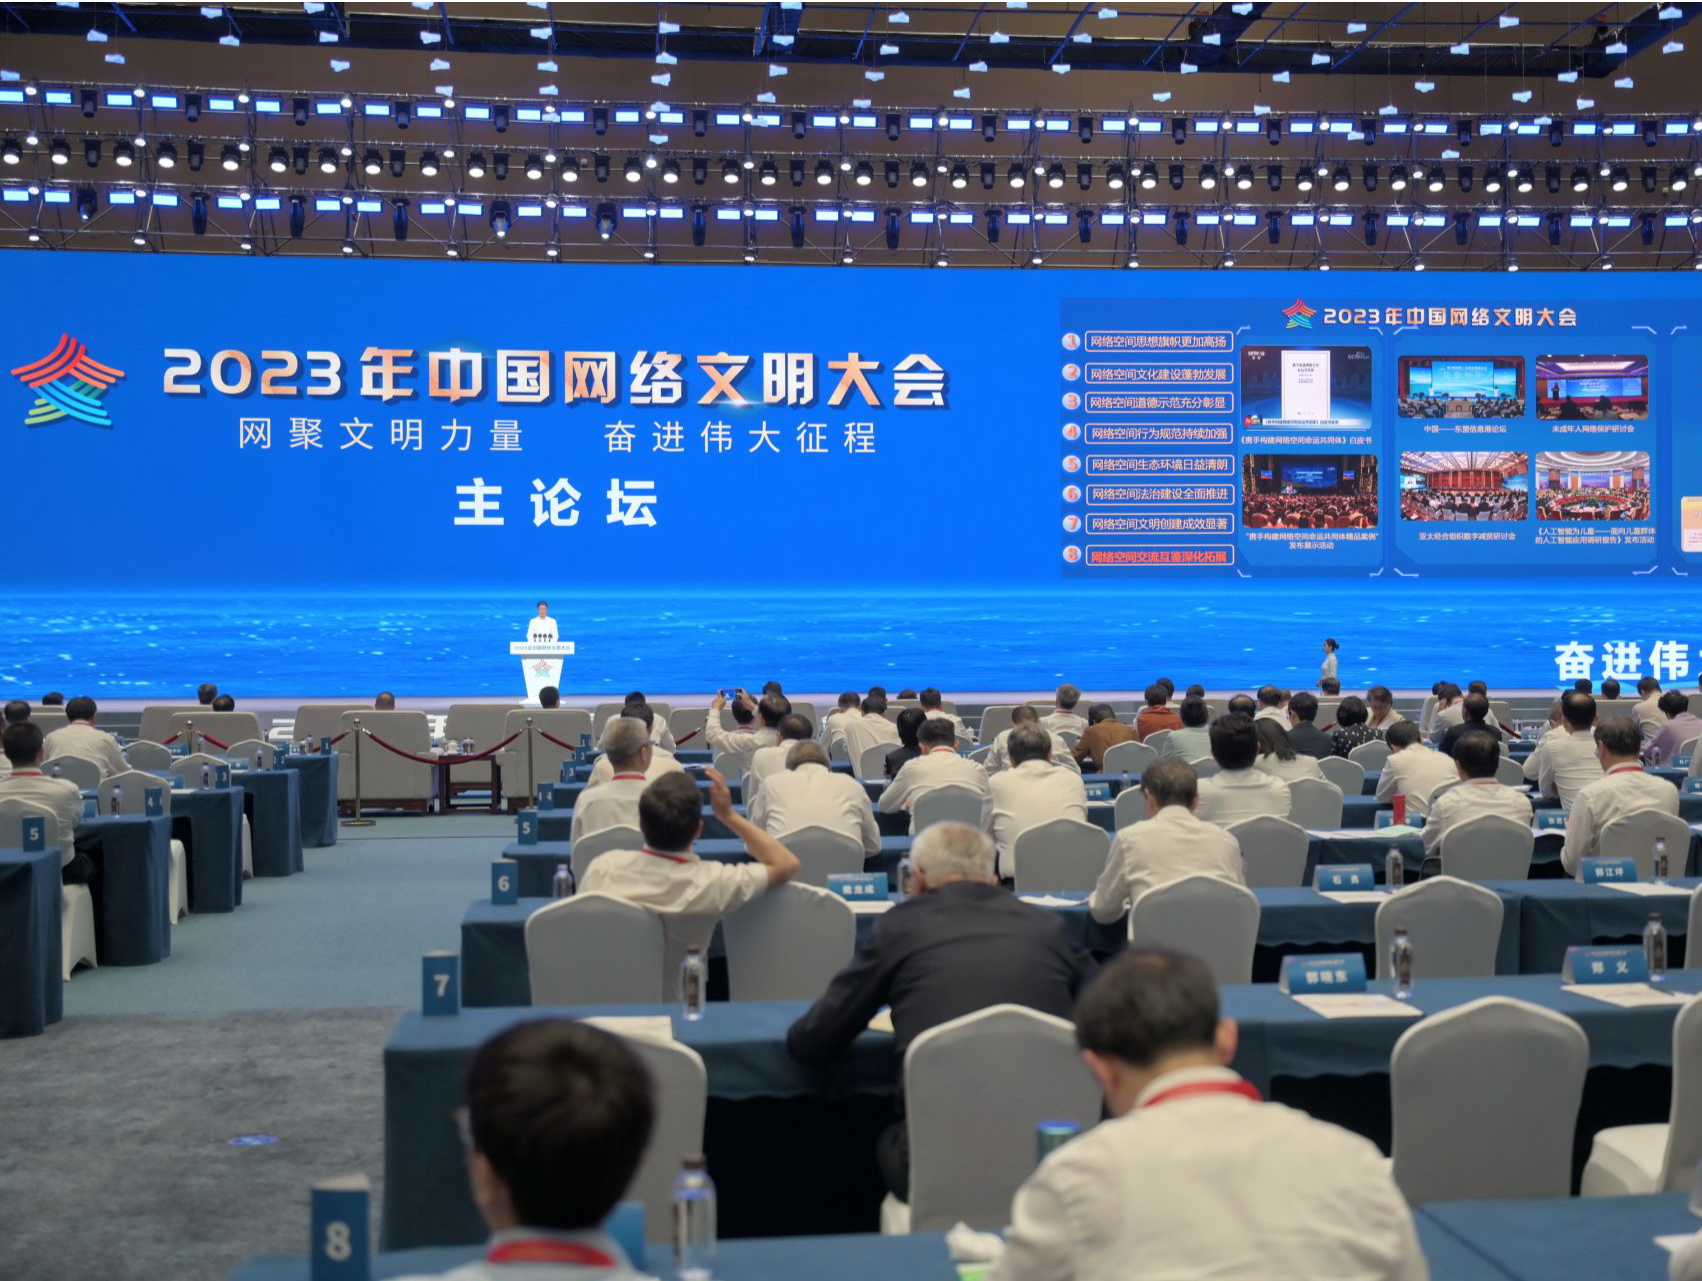 2023年中国网络文明大会在厦门开幕 深圳入选2023年城市网络文明典型案例城市